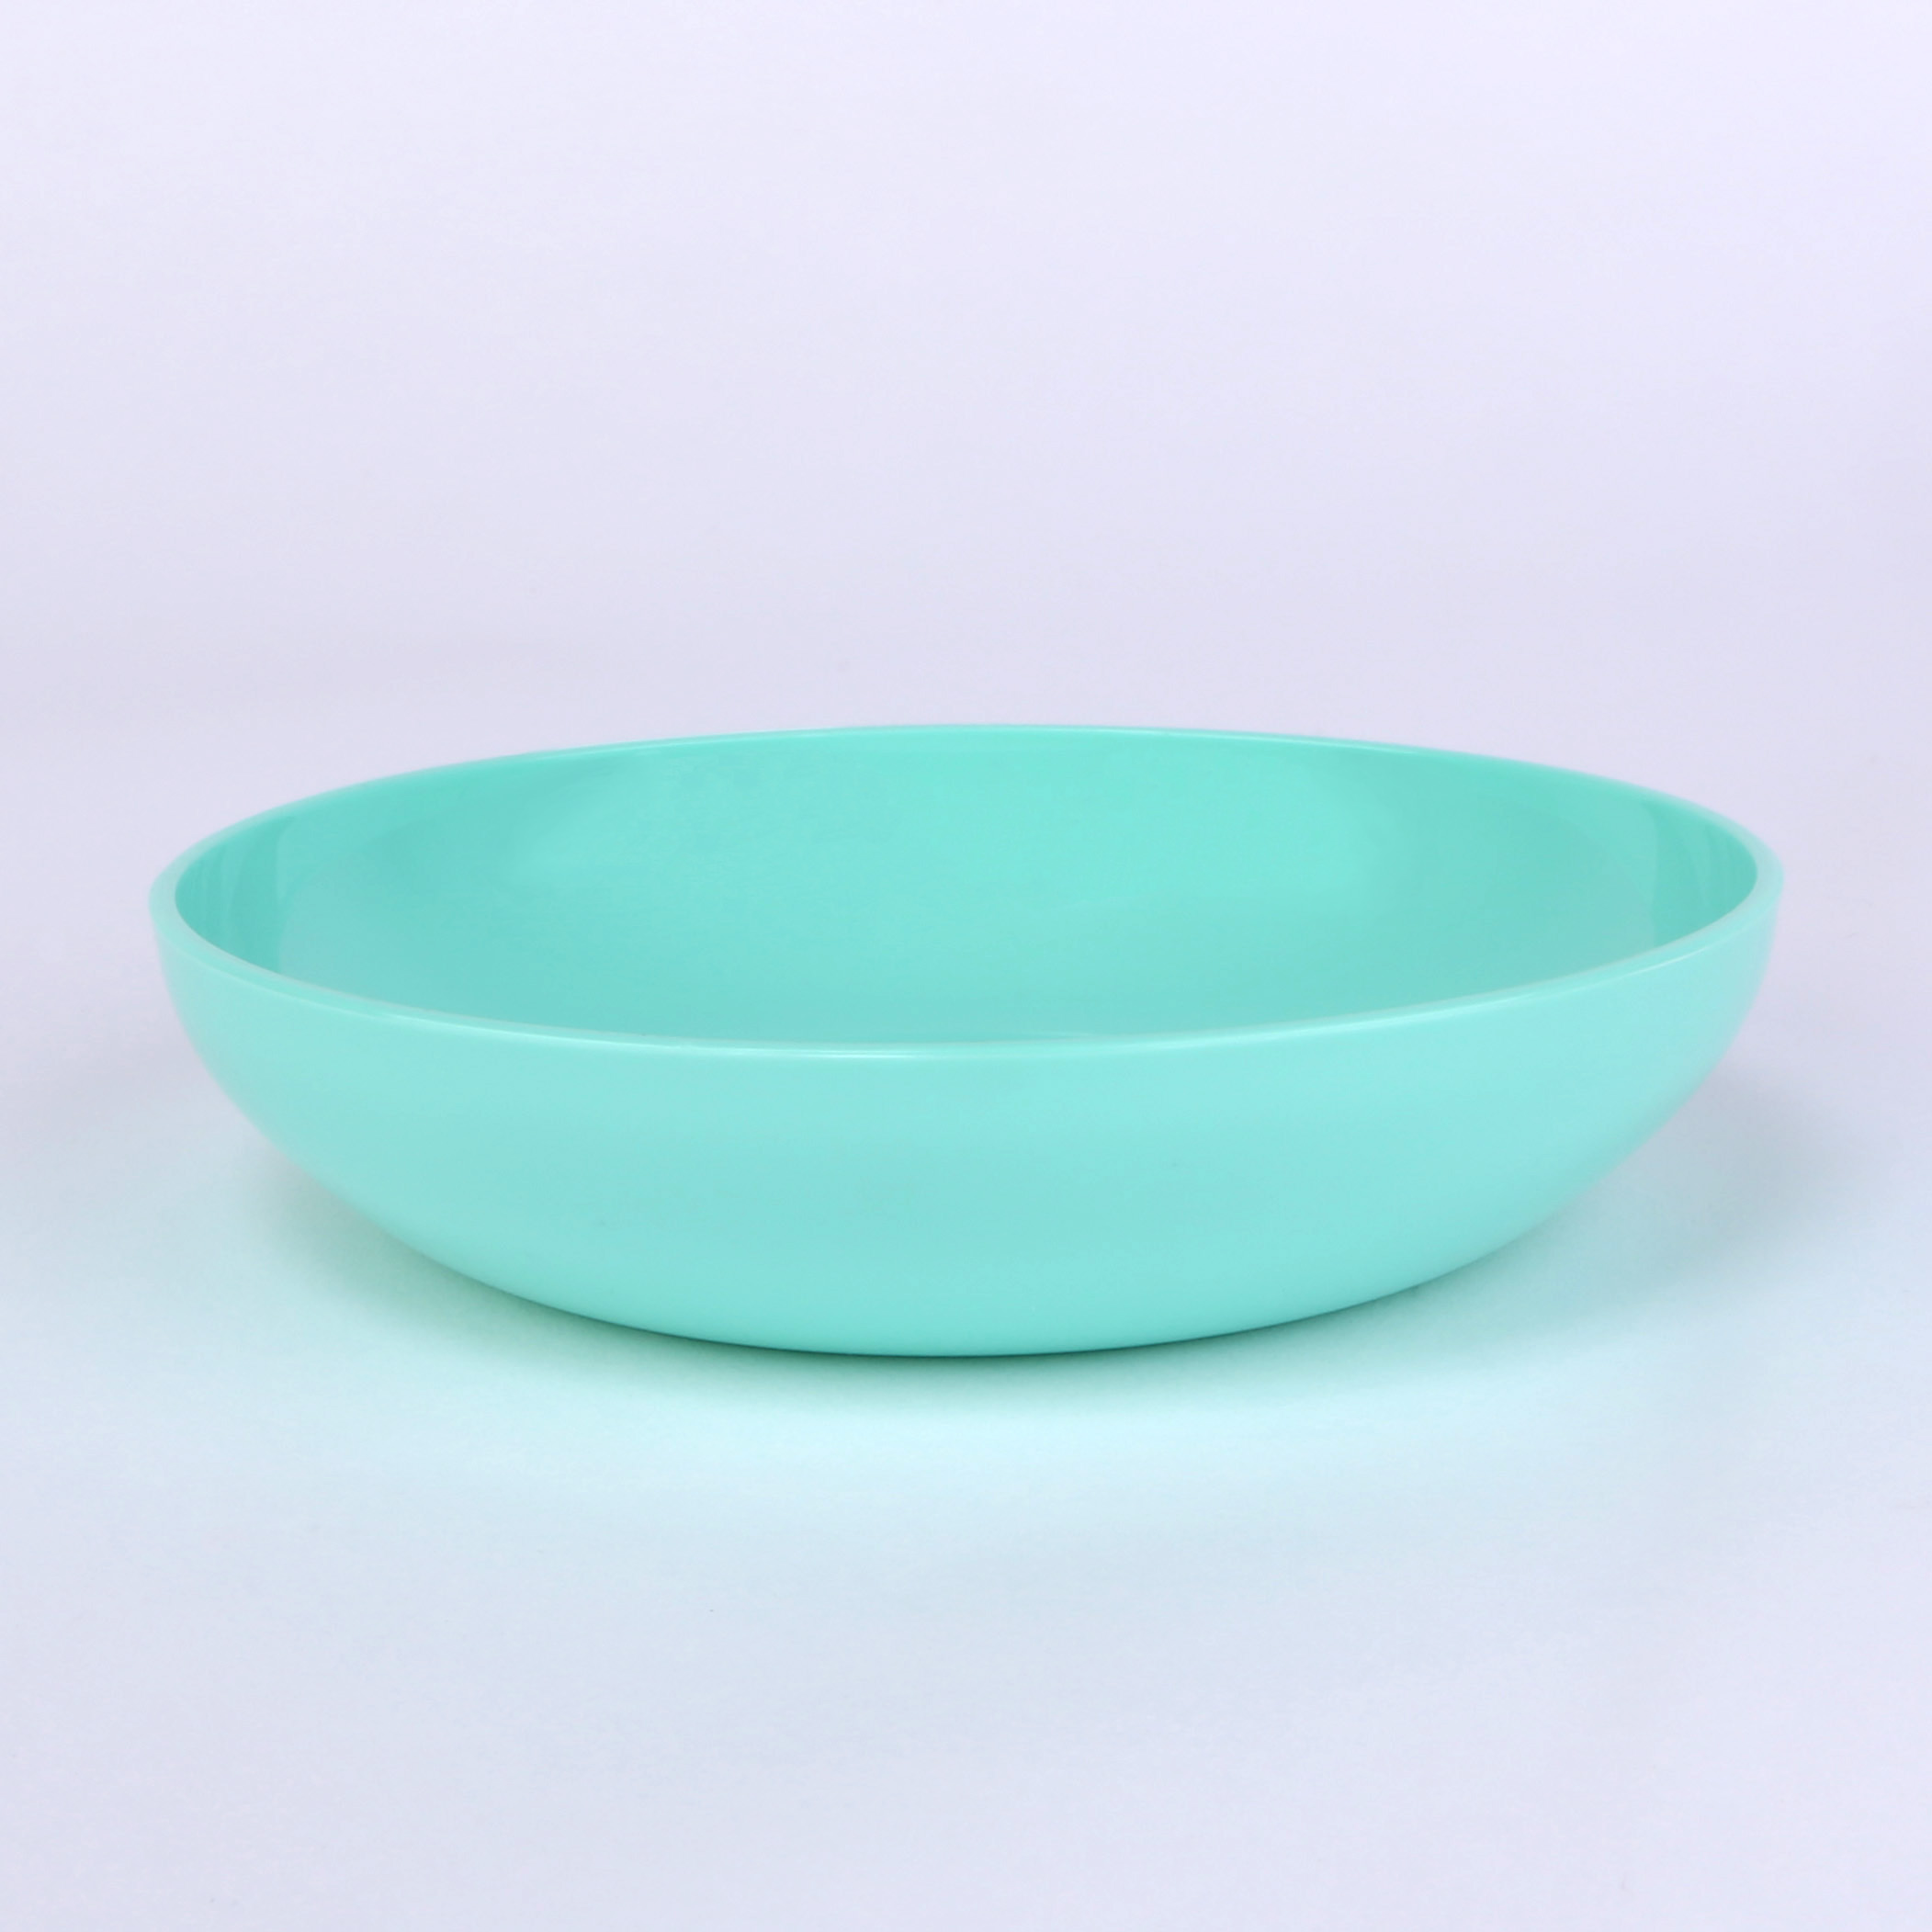 vaLon Zephyr Flache Dessertschale 13,5 cm aus schadstofffreiem Kunststoff in der Farbe pastellgrün.